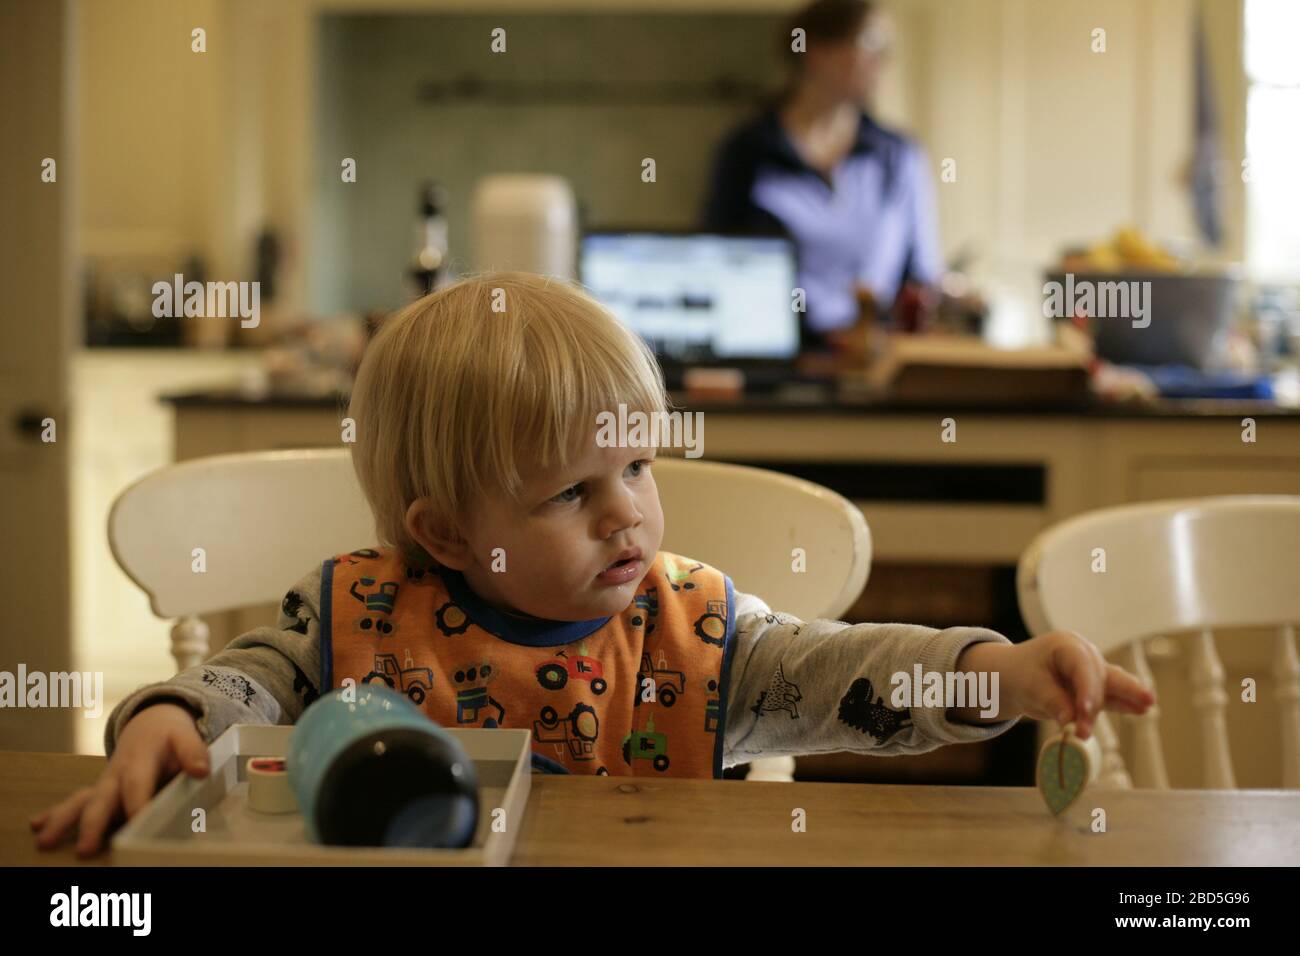 Kind Kleinkind spielen mit Puzzle, während Mutter kocht Abendessen in der Küche während der Zeit der Selbstisolation - 2020 COVID-19 Coronavirus Pandemie Stockfoto